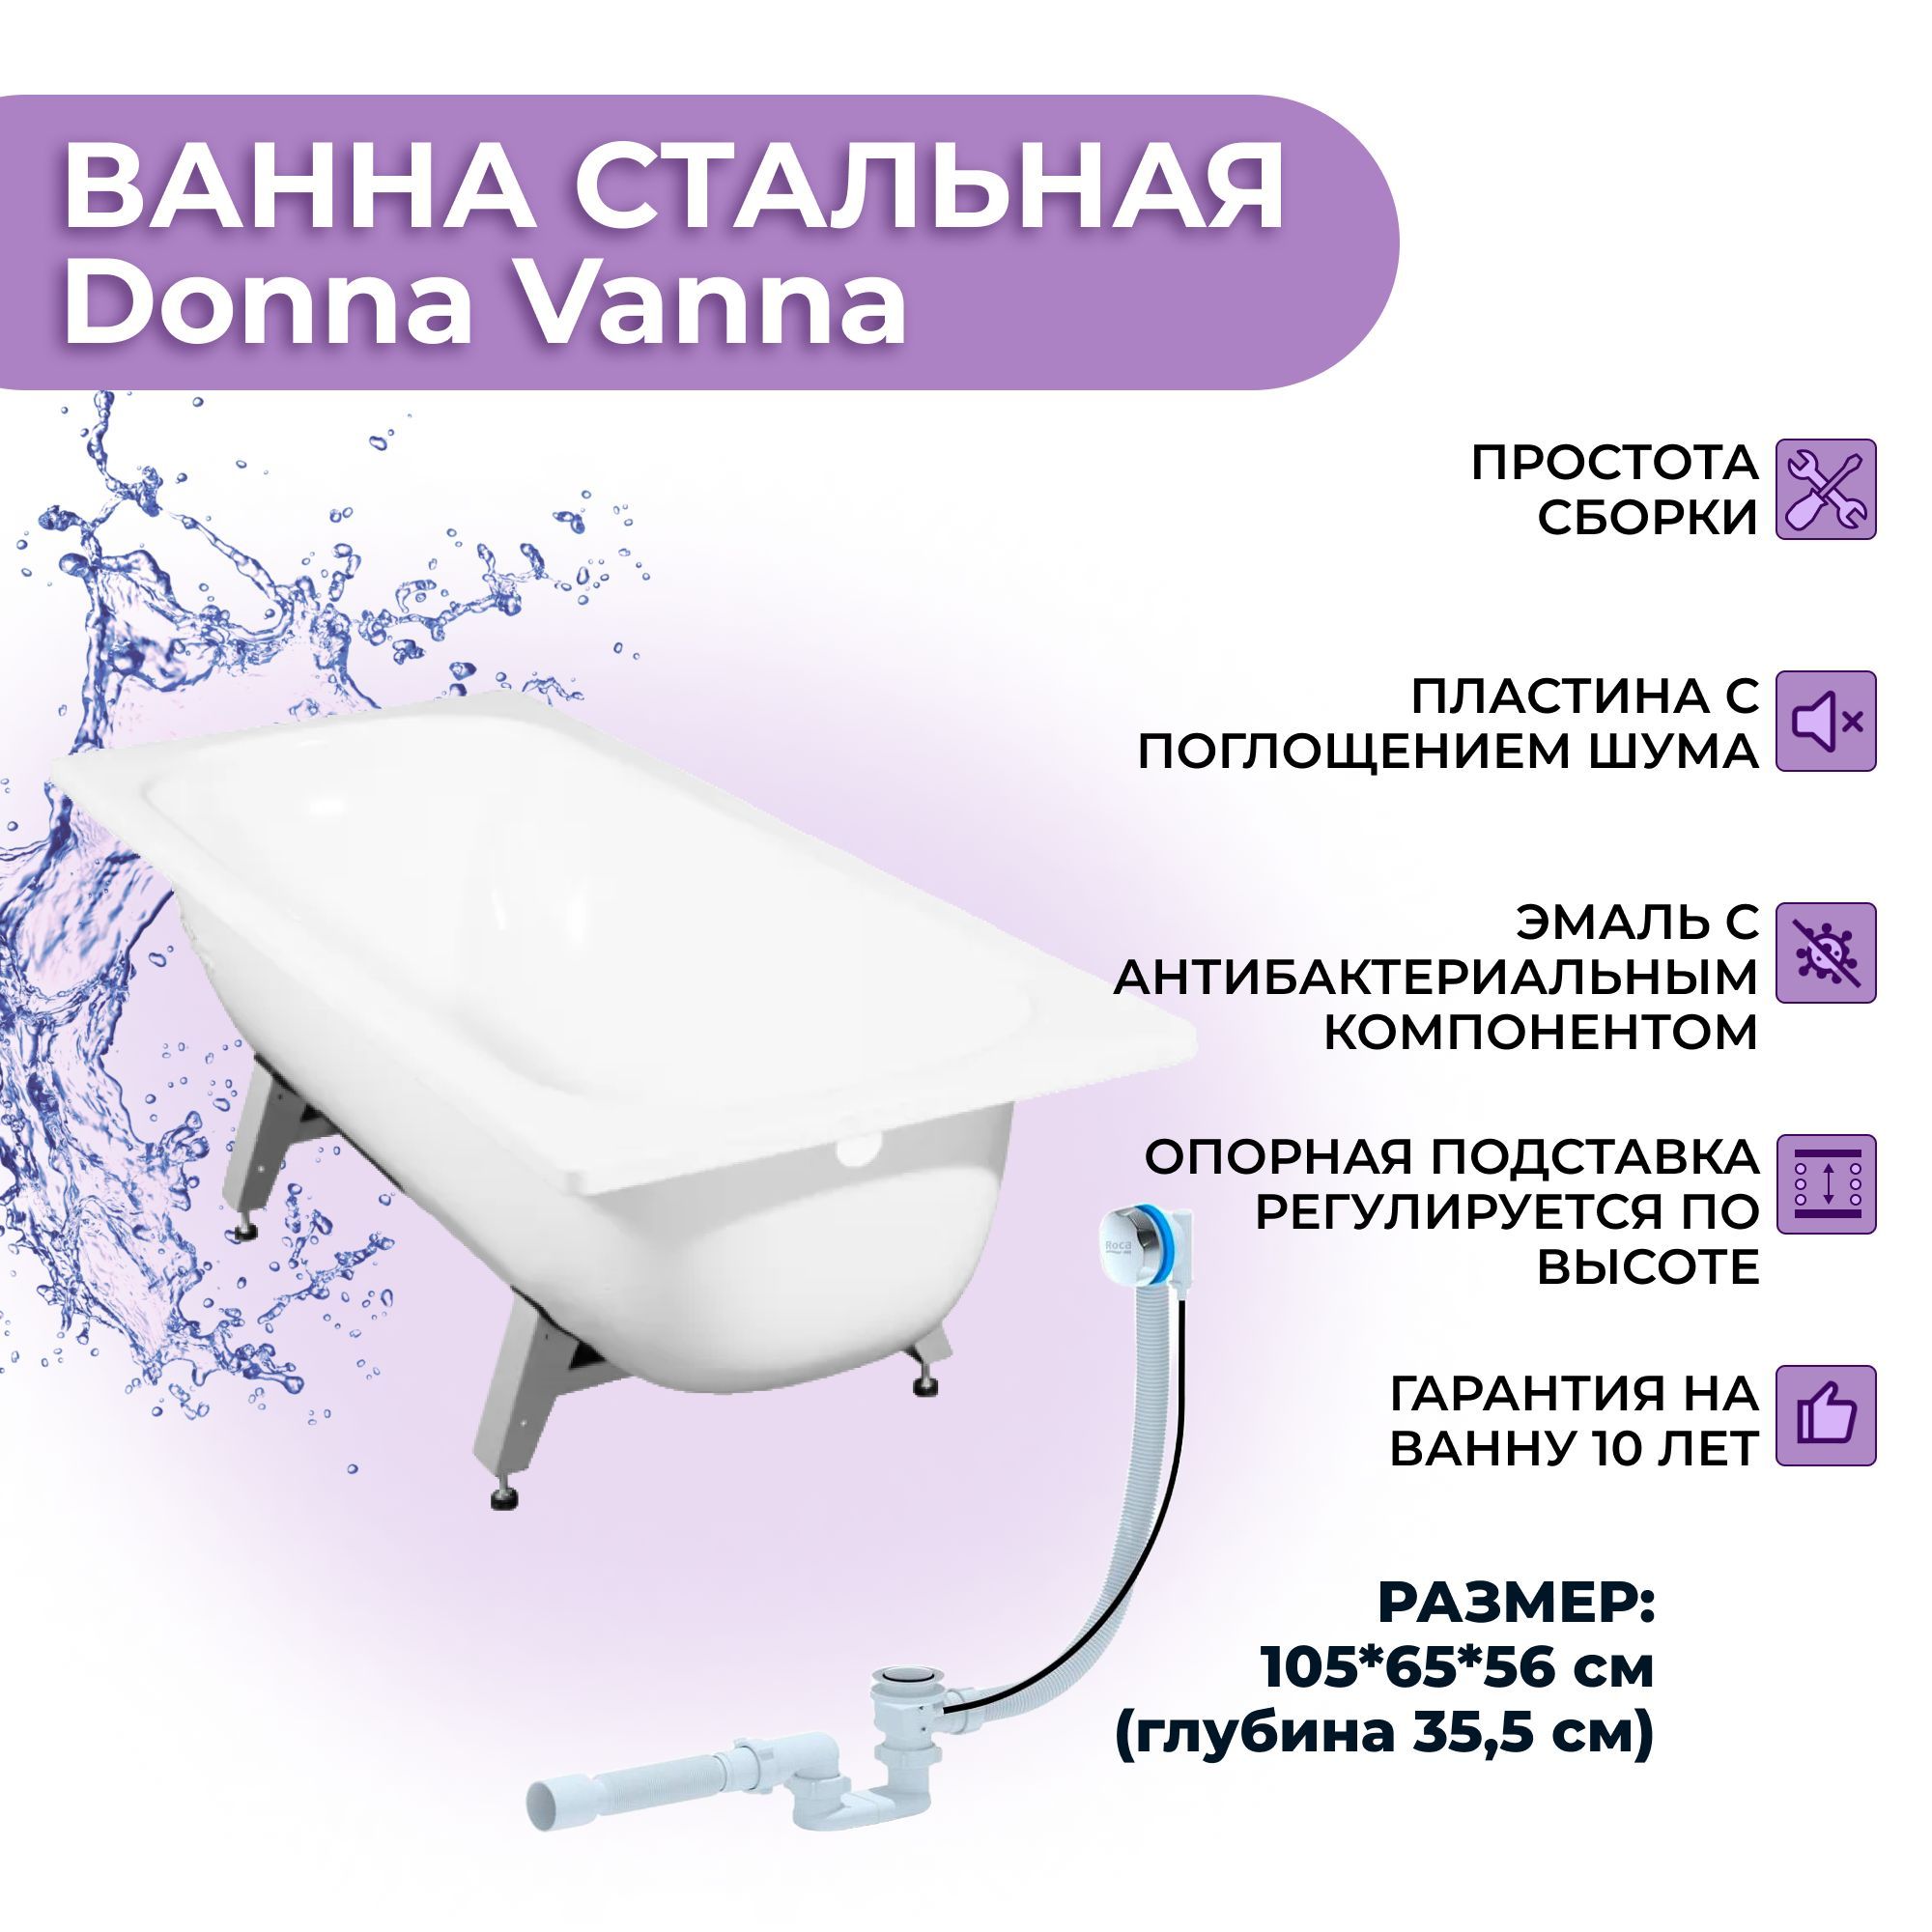 Ванна виз donna vanna. Donna Vanna на каркасе. Габариты ванны Donna Vanna. Стальная ванна виз 120 см. Опорная подставка для ванны виз инструкция.